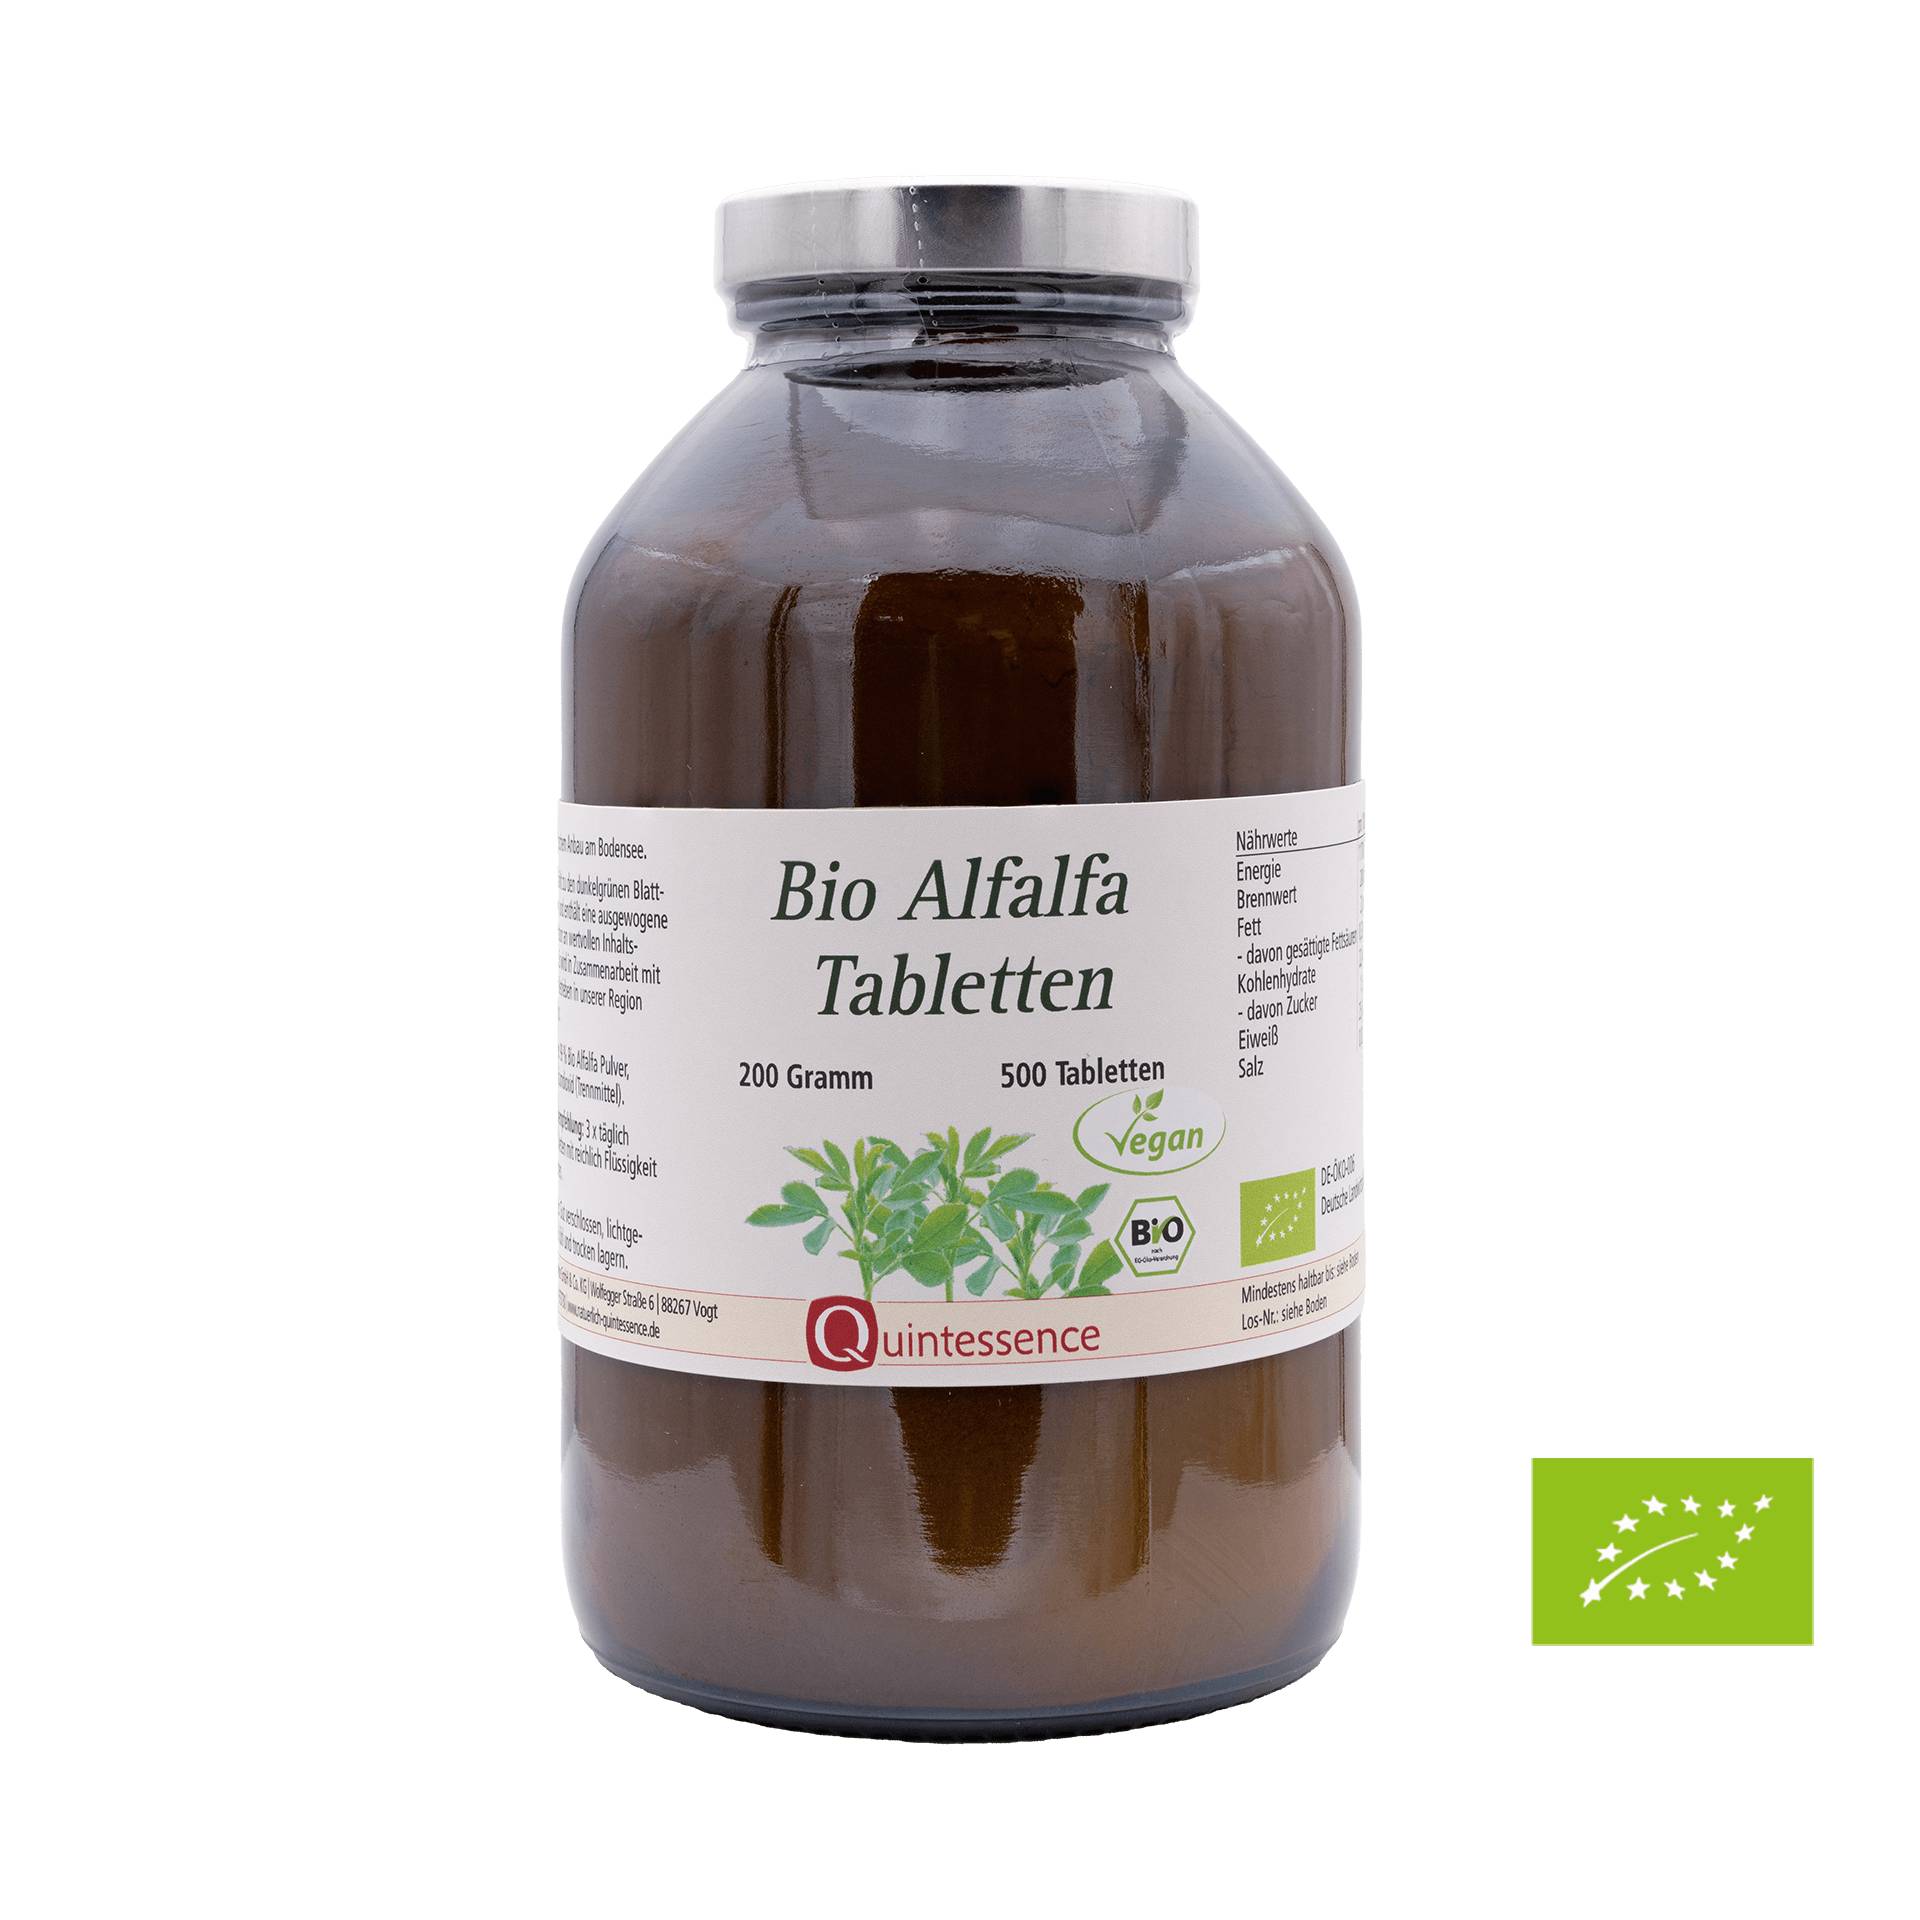 Bio Alfalfa Tabletten 500 Stück - Aus nachhaltigem Anbau in der Bodensee Region - Vegan - Quintessence von Quintessence